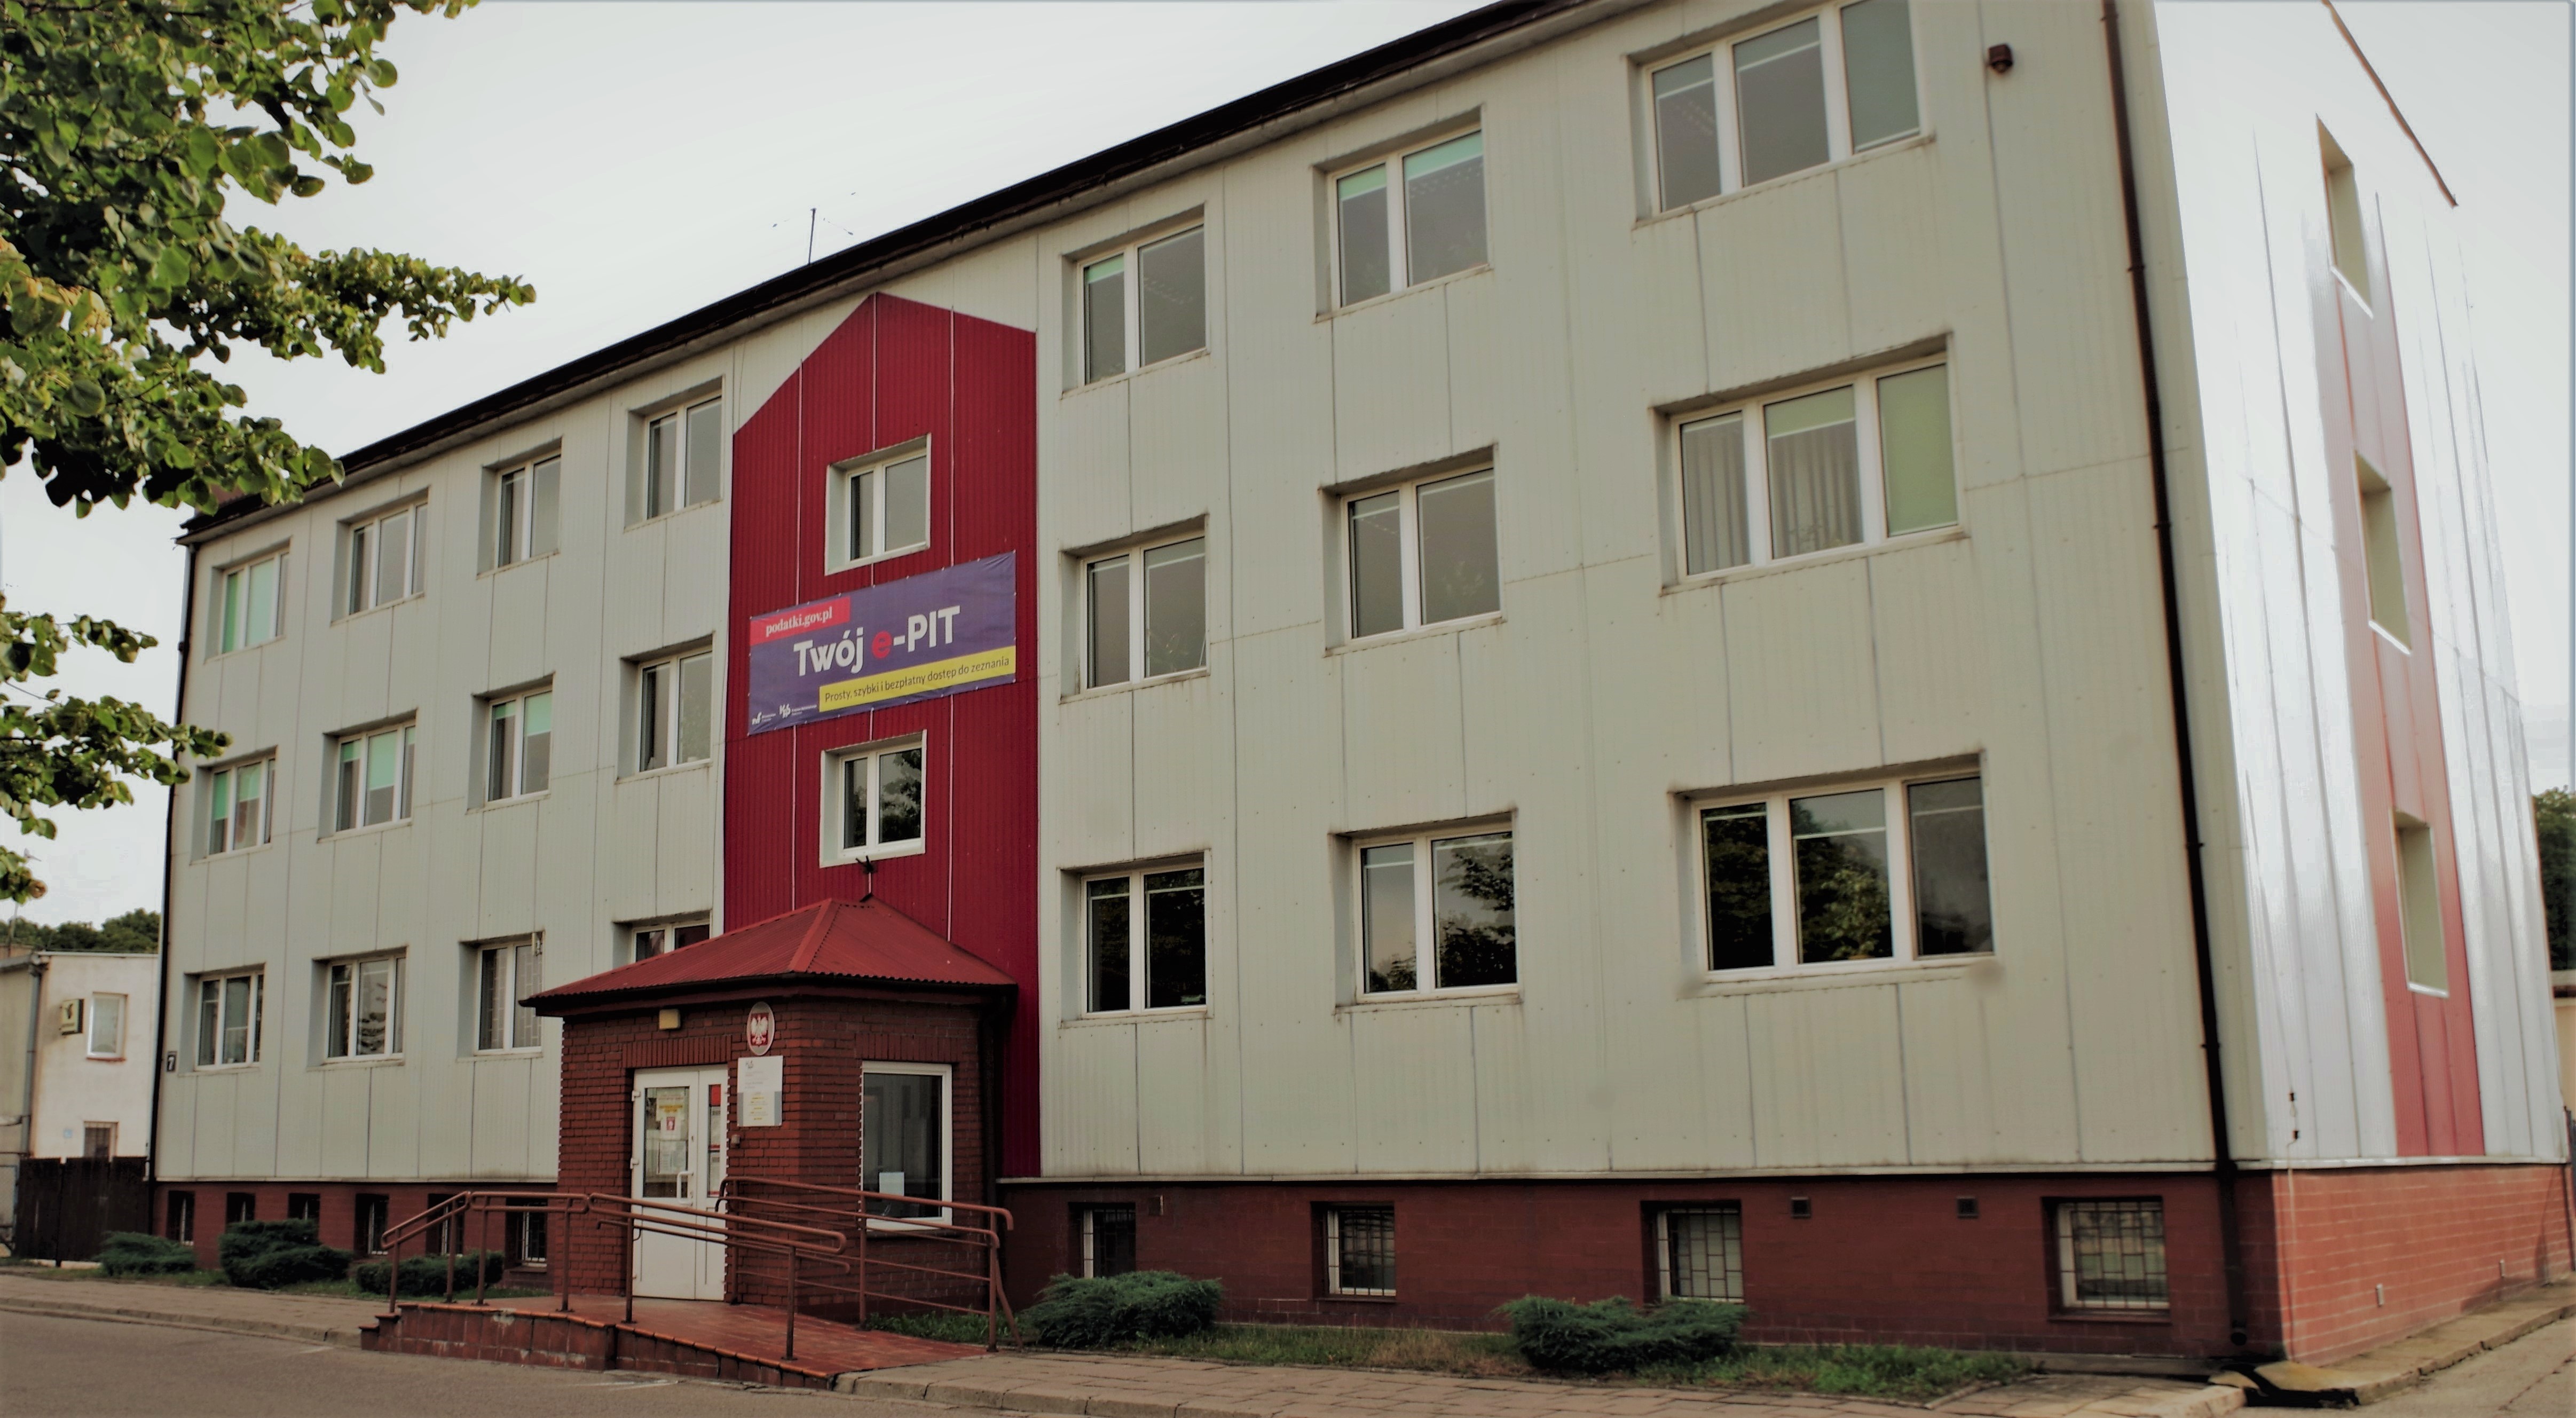 Fasada budynku, w którym znajduje się siedziba Urzędu Skarbowego w Olecku.